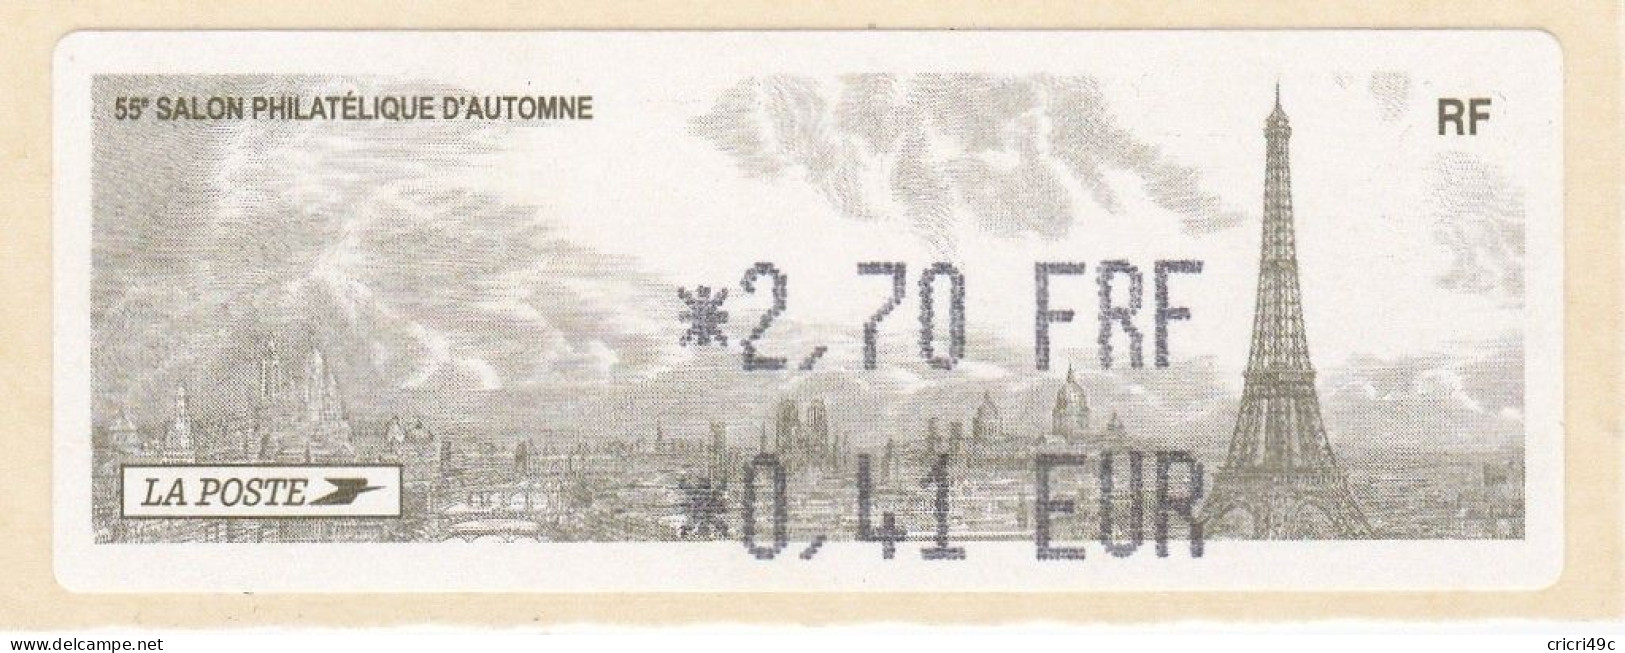 1 ATM LISA. 55è SALON PHILATHELIQUE D"AUTOMNE PARIS  2001. 2.70F  Neufs** - 2010-... Vignette Illustrate